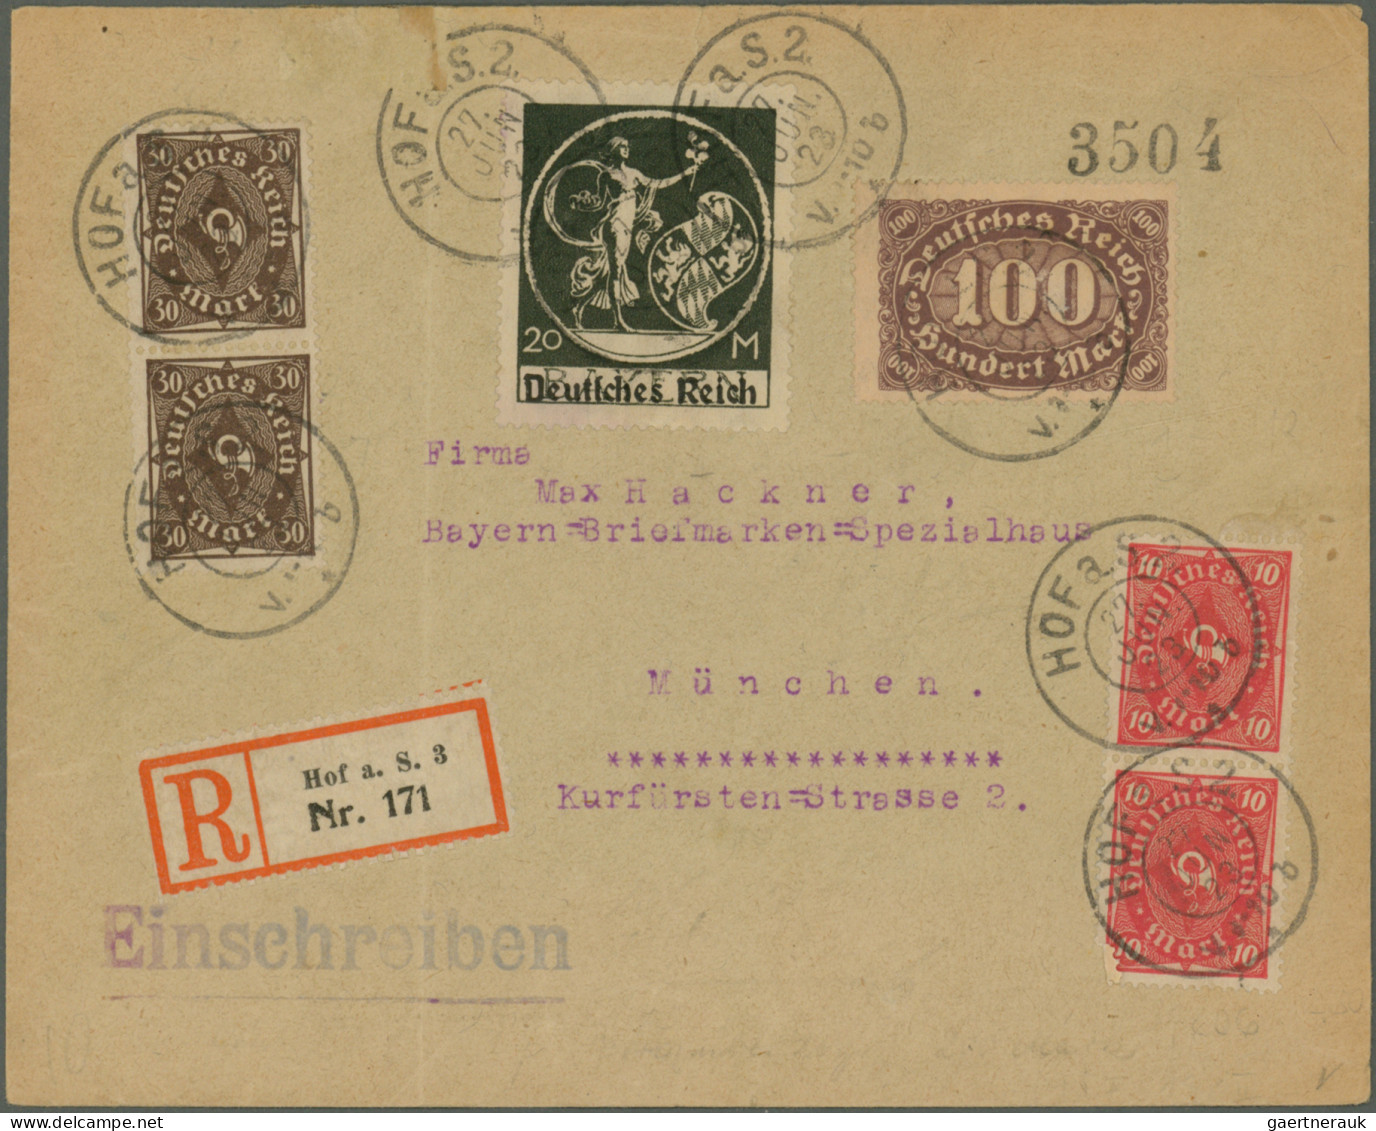 Deutsches Reich - Inflation: 1919/1923, vielseitige Partie von ca. 270 Briefen,